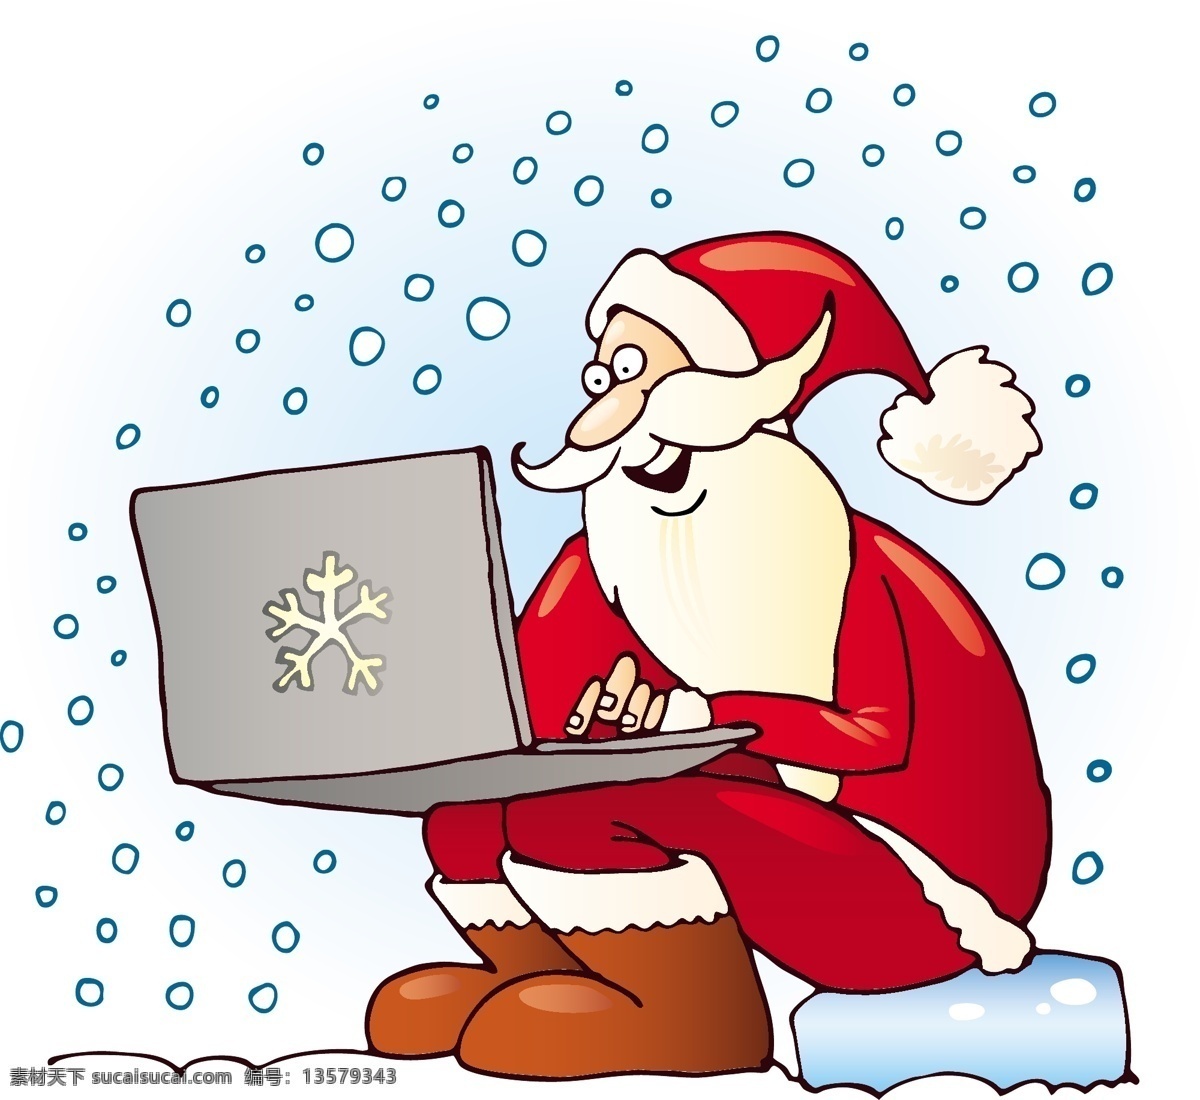 玩 笔记本 电脑 圣诞老人 坐着 笔记本电脑 雪花 圣诞节 卡通图案 时尚花纹 花纹 边框 背景图案 卡通形象 矢量人物 矢量素材 白色